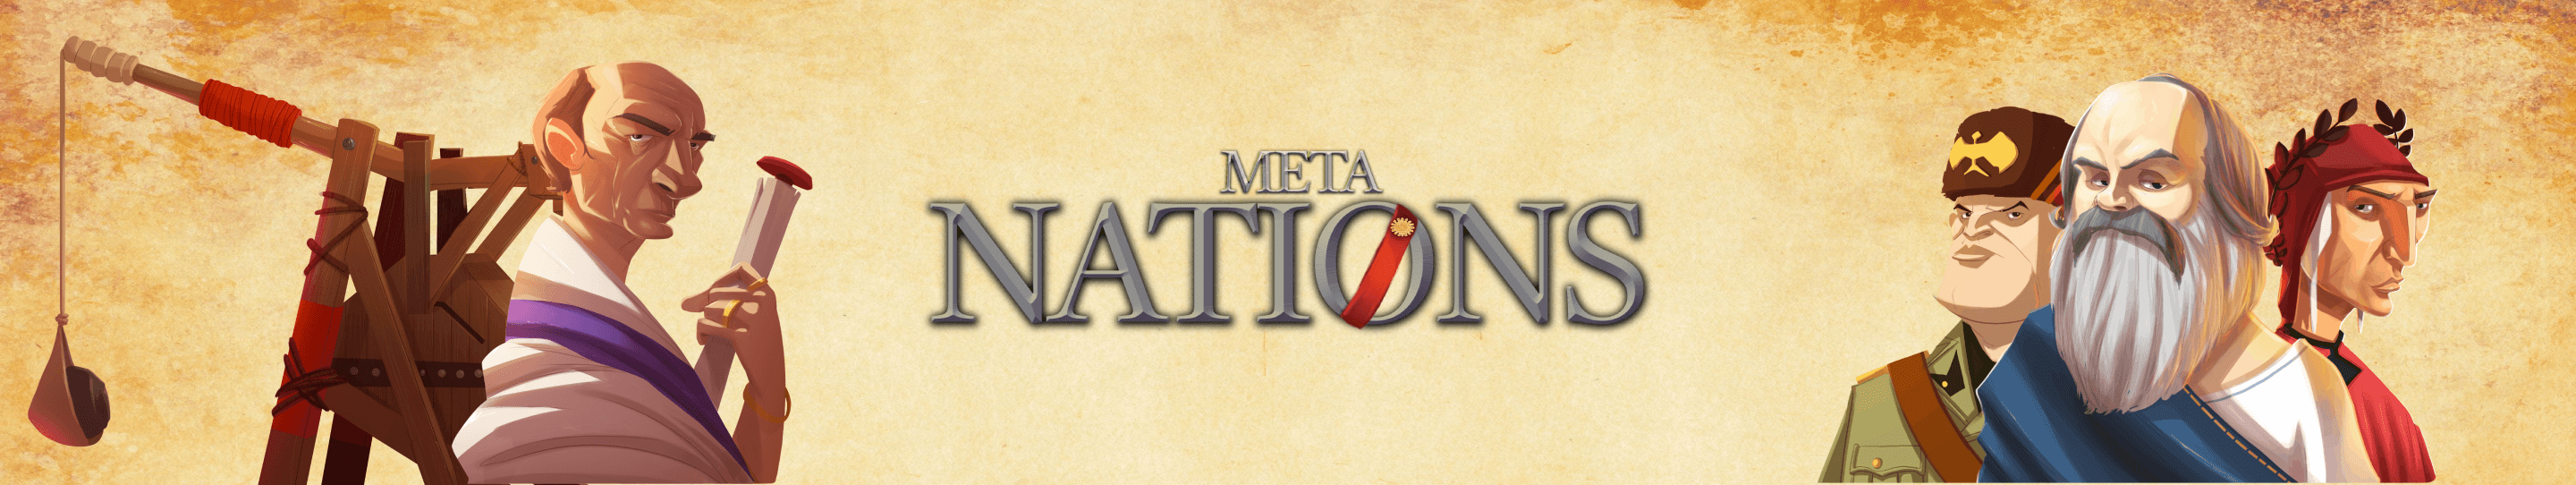 Meta_Nations 배너